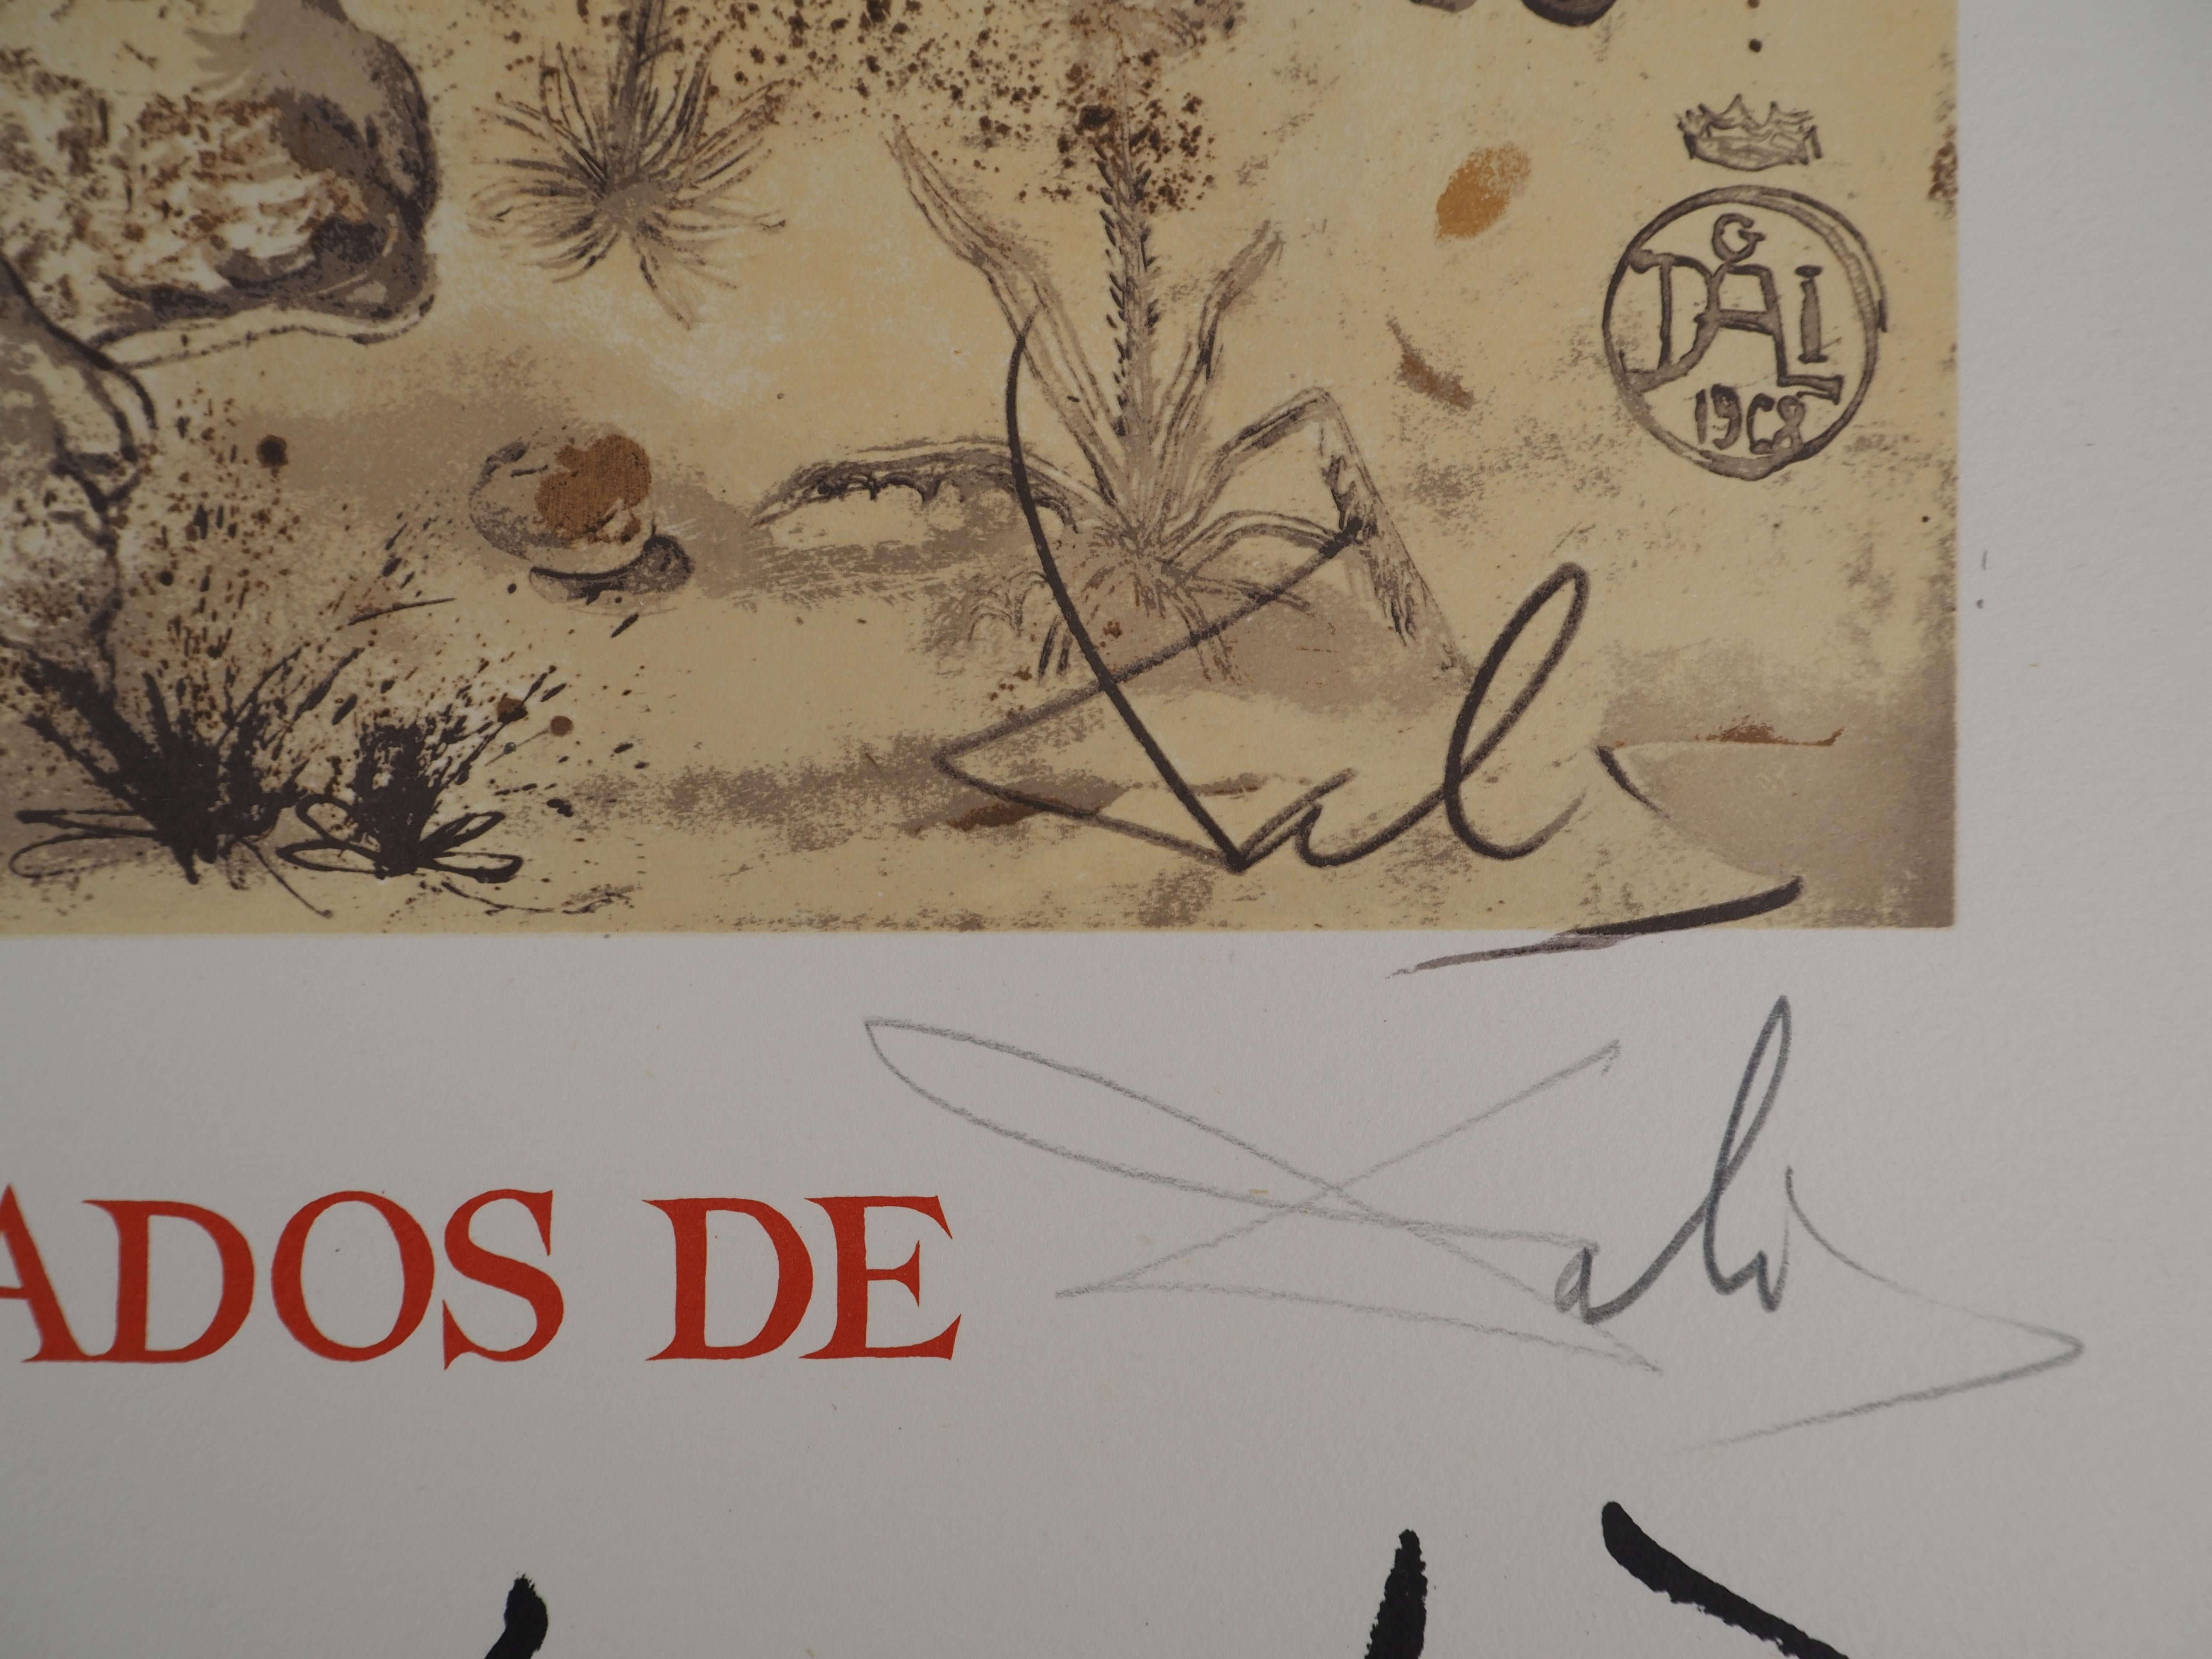 Rhinoceros, Tribute to Albrecht DURER - Signed lithograph poster (Gaspar #1503) - Print by Salvador Dalí